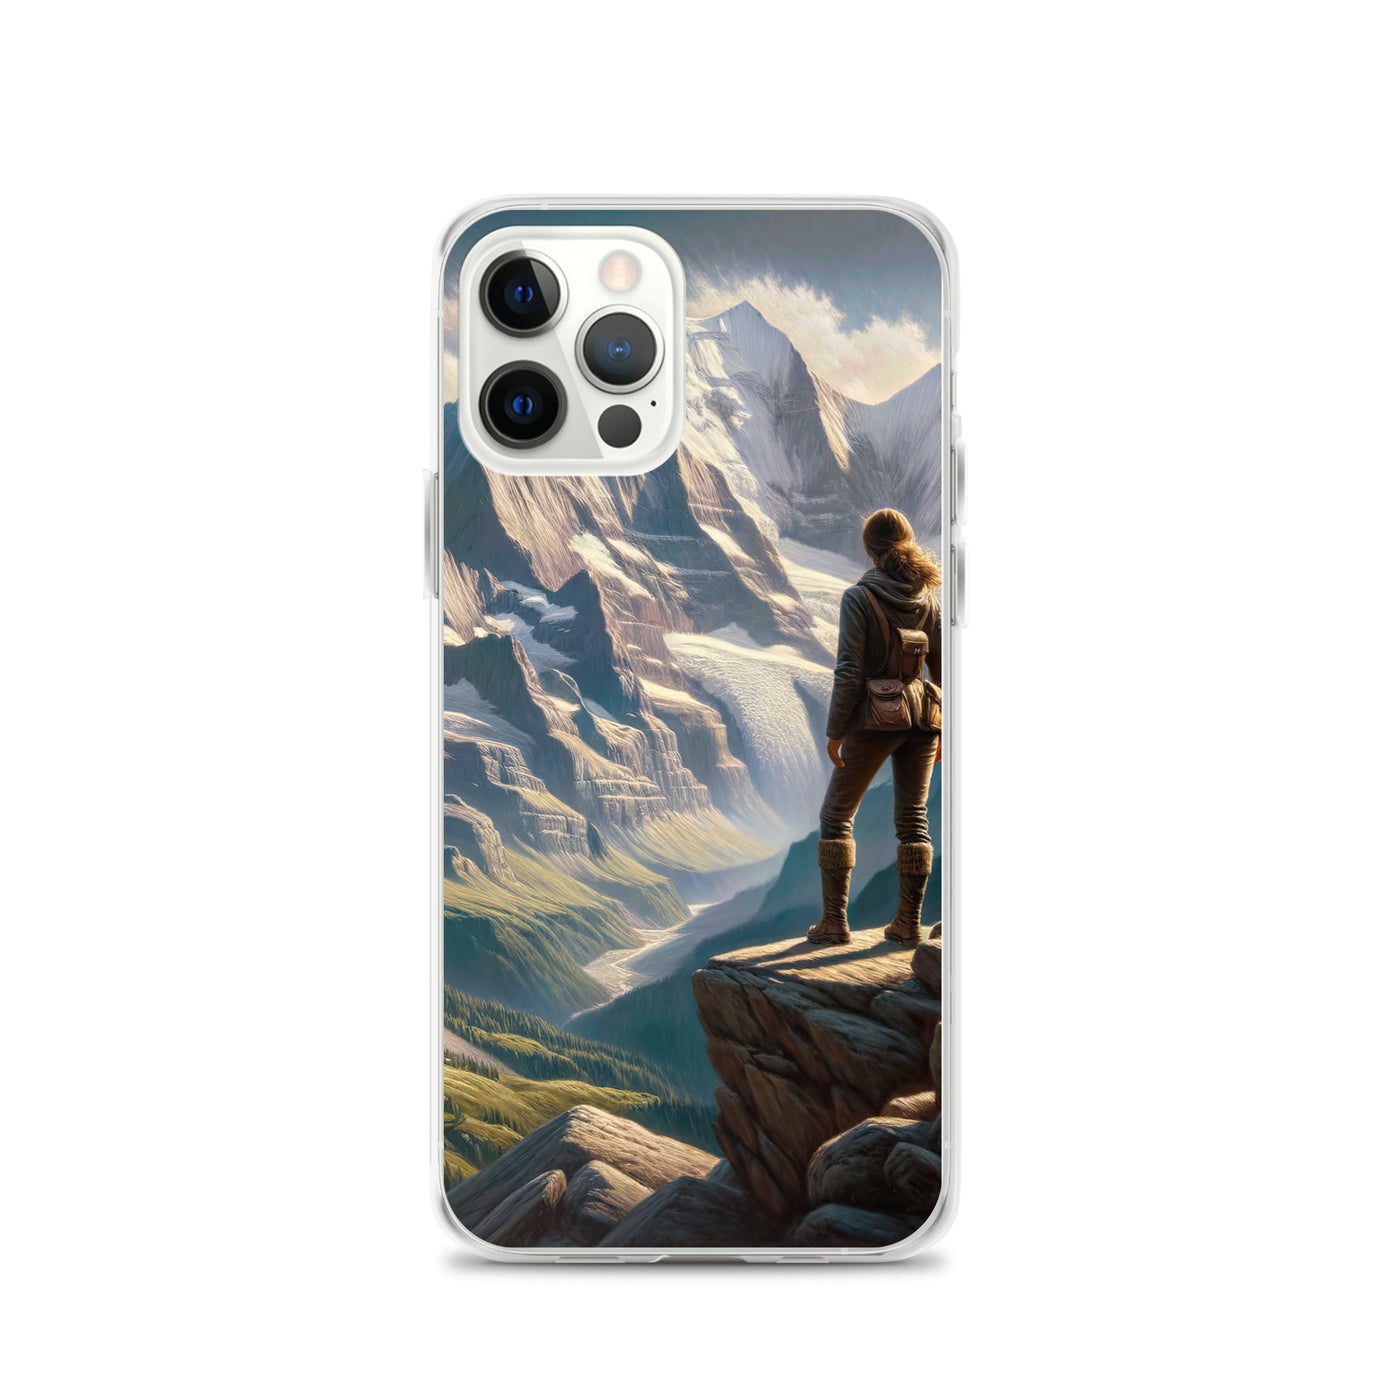 Ölgemälde der Alpengipfel mit Schweizer Abenteurerin auf Felsvorsprung - iPhone Schutzhülle (durchsichtig) wandern xxx yyy zzz iPhone 12 Pro